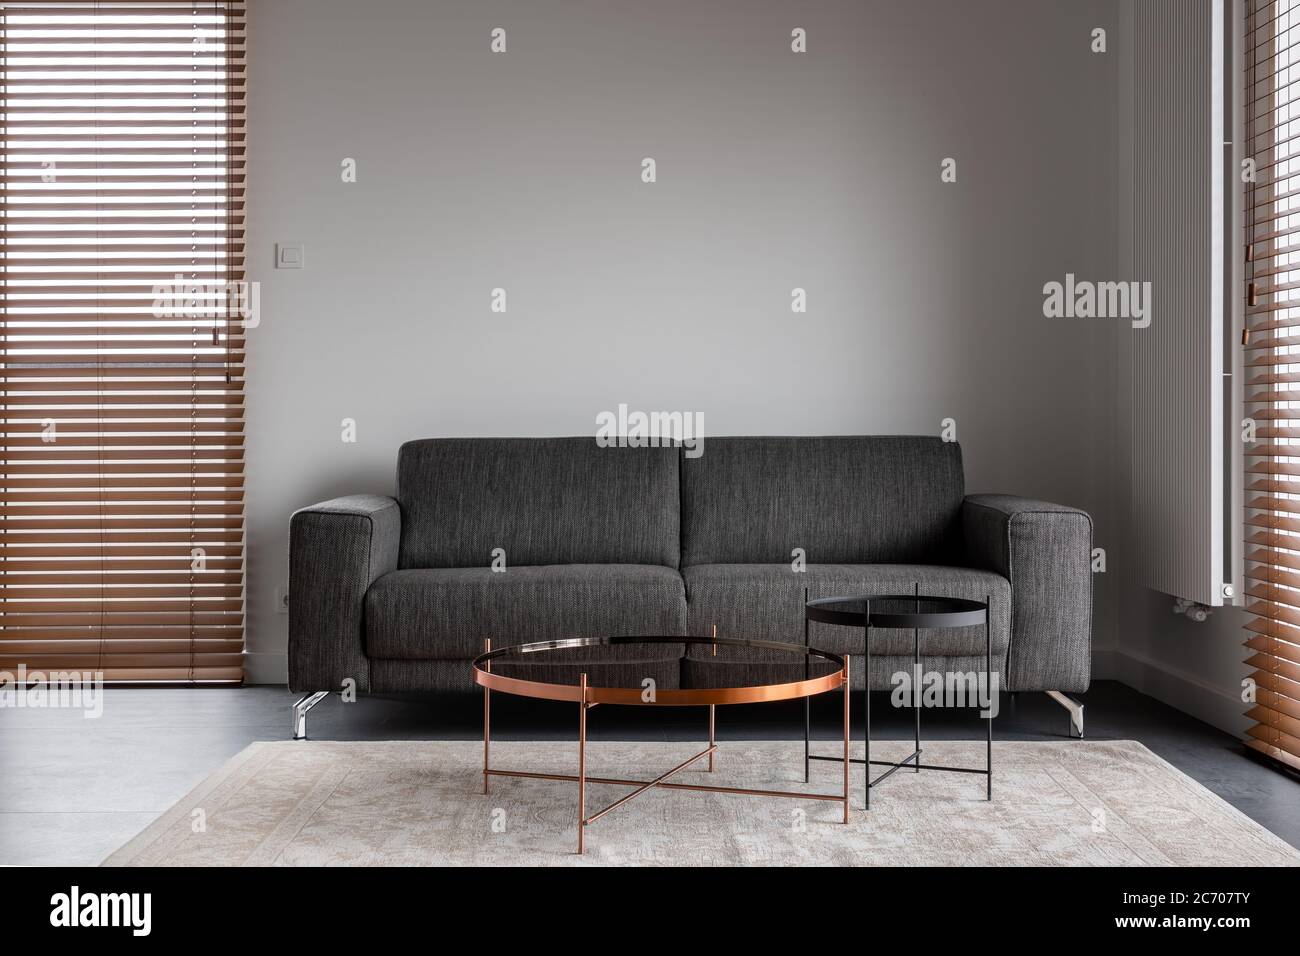 Intérieur minimaliste et élégant avec canapé gris et tables basses en métal Banque D'Images